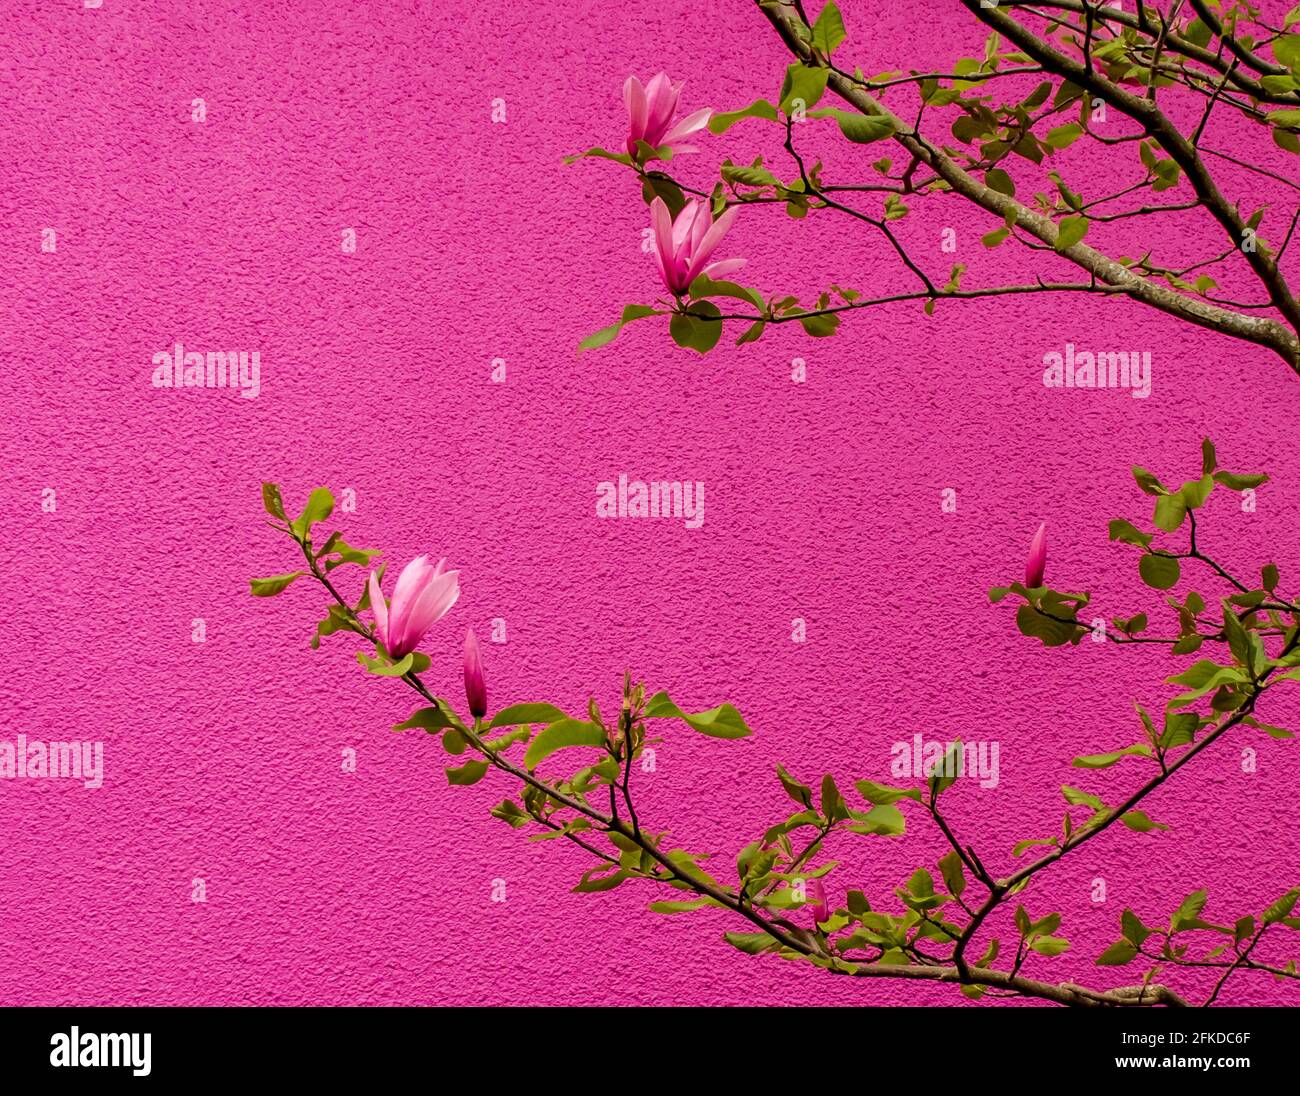 La Magnolia fiorisce contro una parete rosa brillante. Adatto per biglietti d'auguri, sfondo, copertina di riviste. Spazio per le parole. Foto Stock